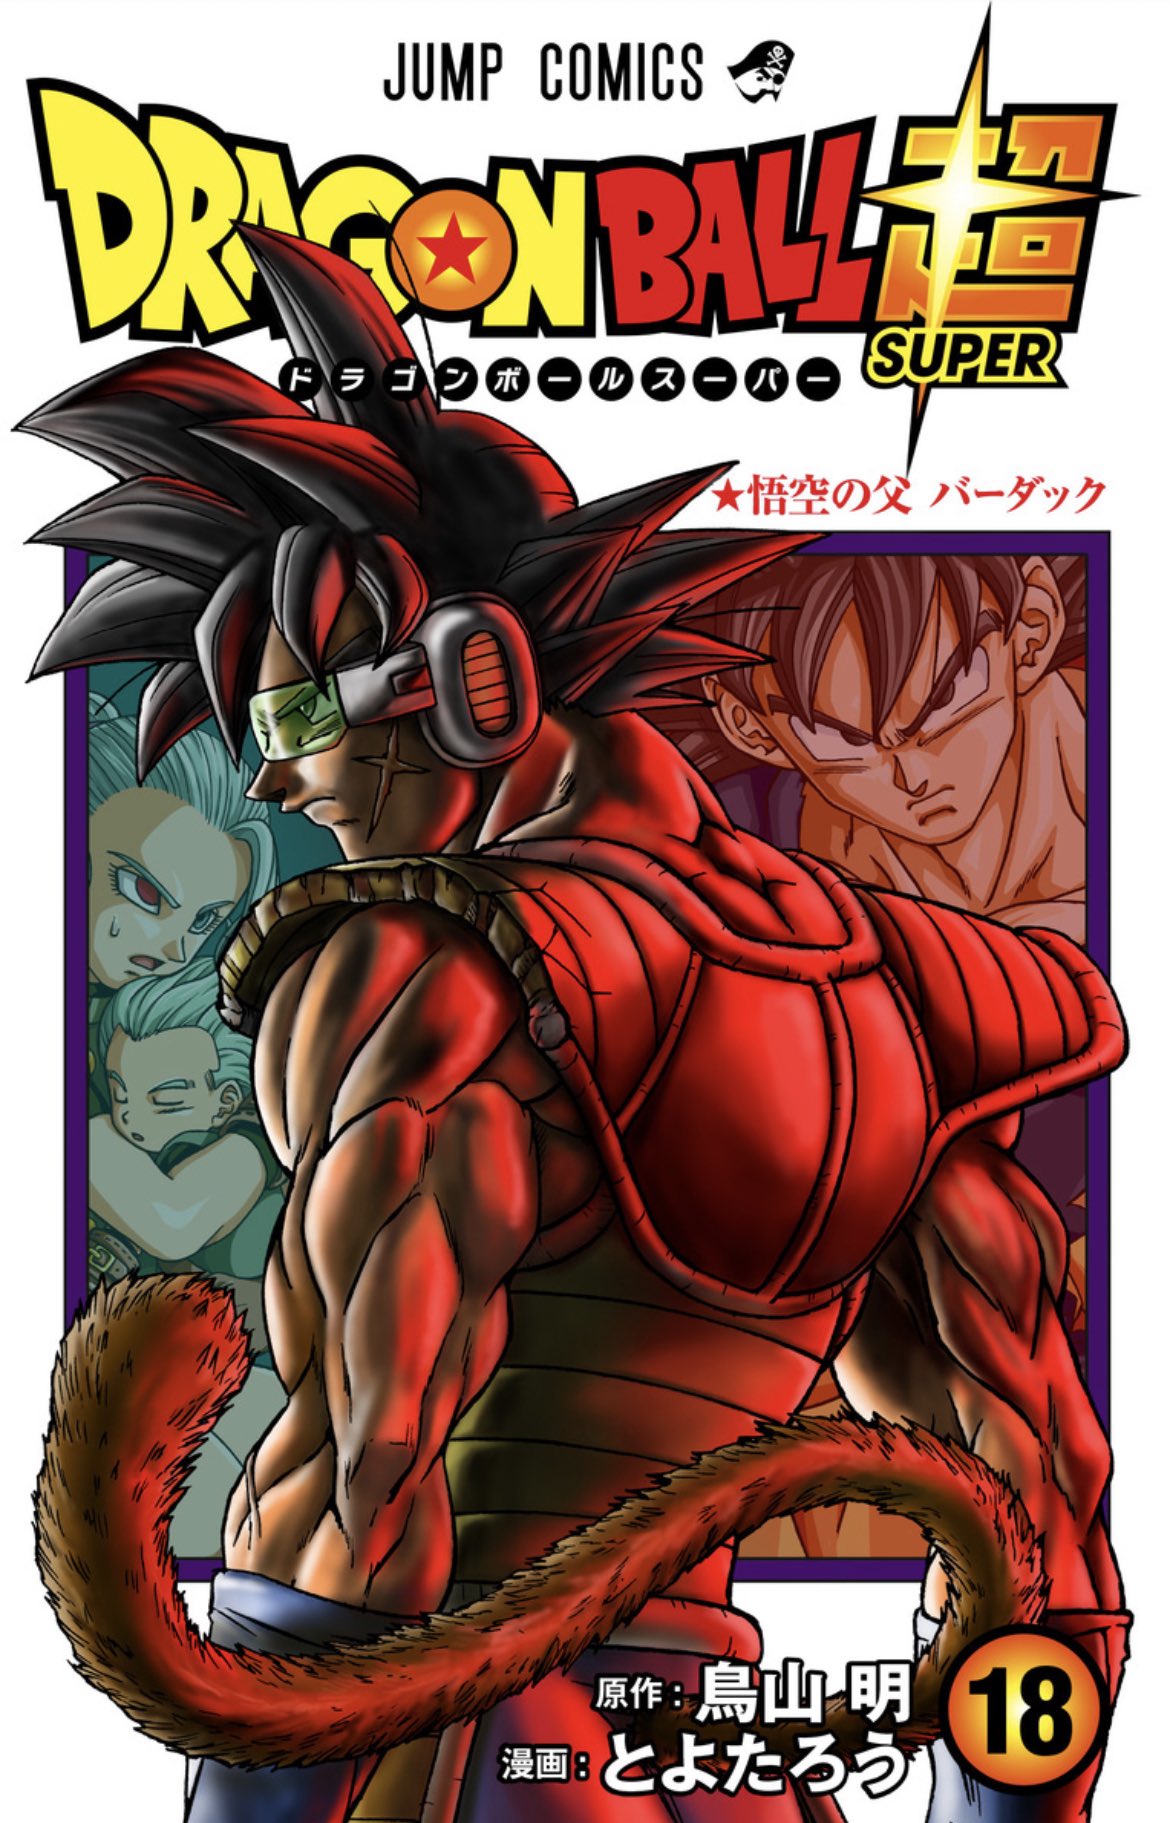 Capa do Volume 18 de Dragon Ball Super traz Bardock em destaque